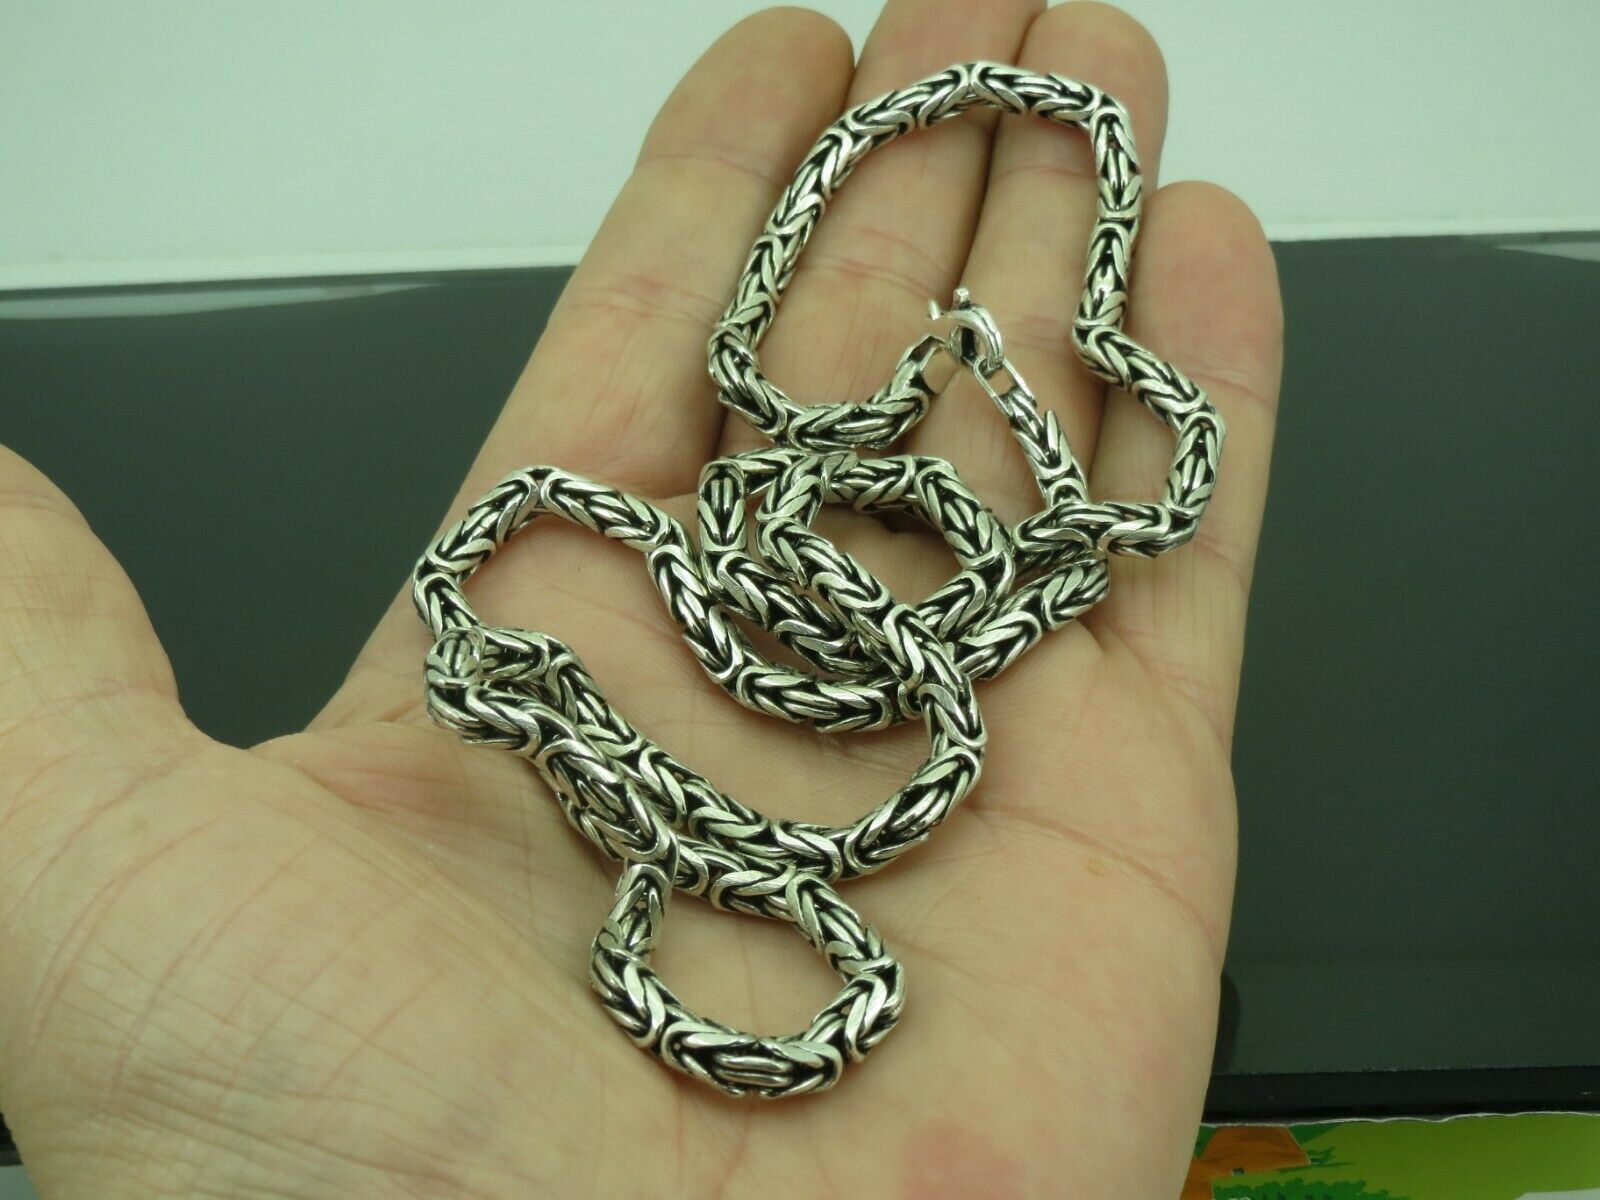 Handmade Silver Chain